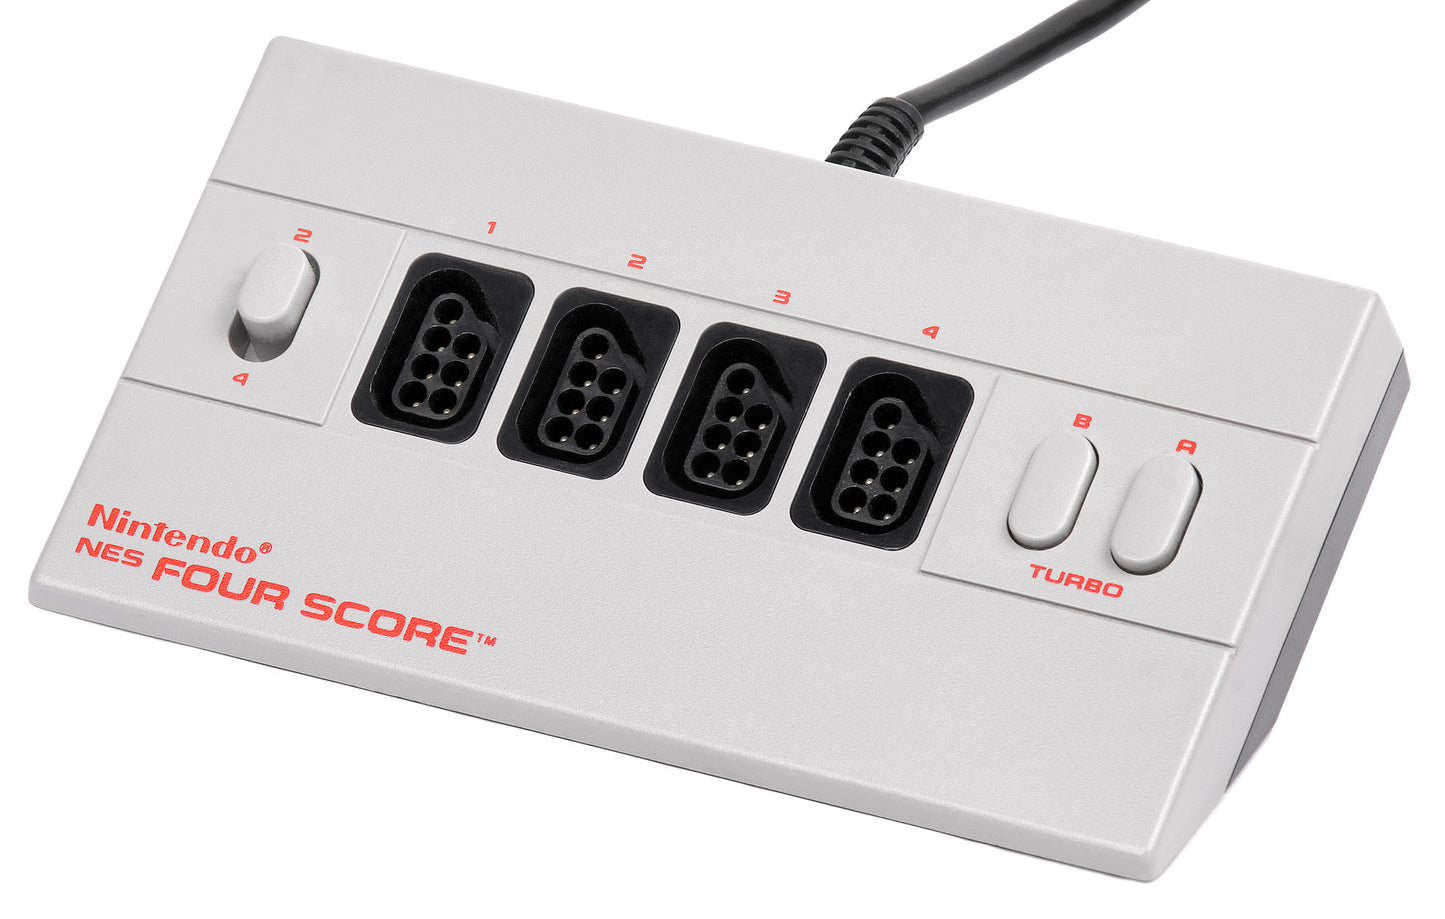 Nintendo NES Four Score (Nintendo NES)